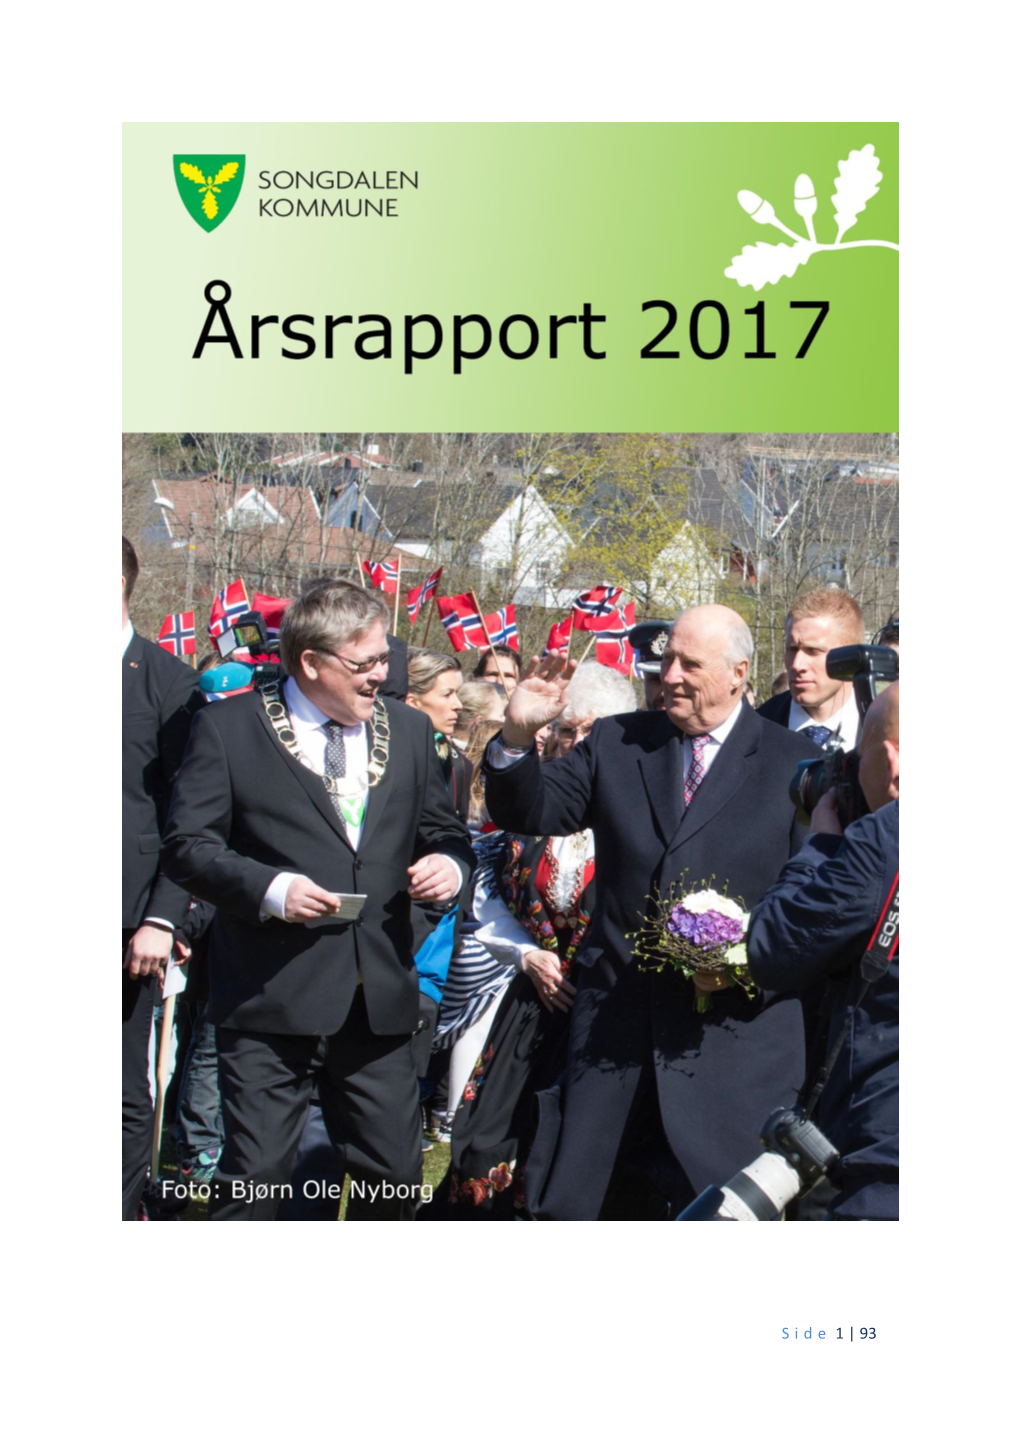 Årsrapport 2017 for Songdalen Kommune